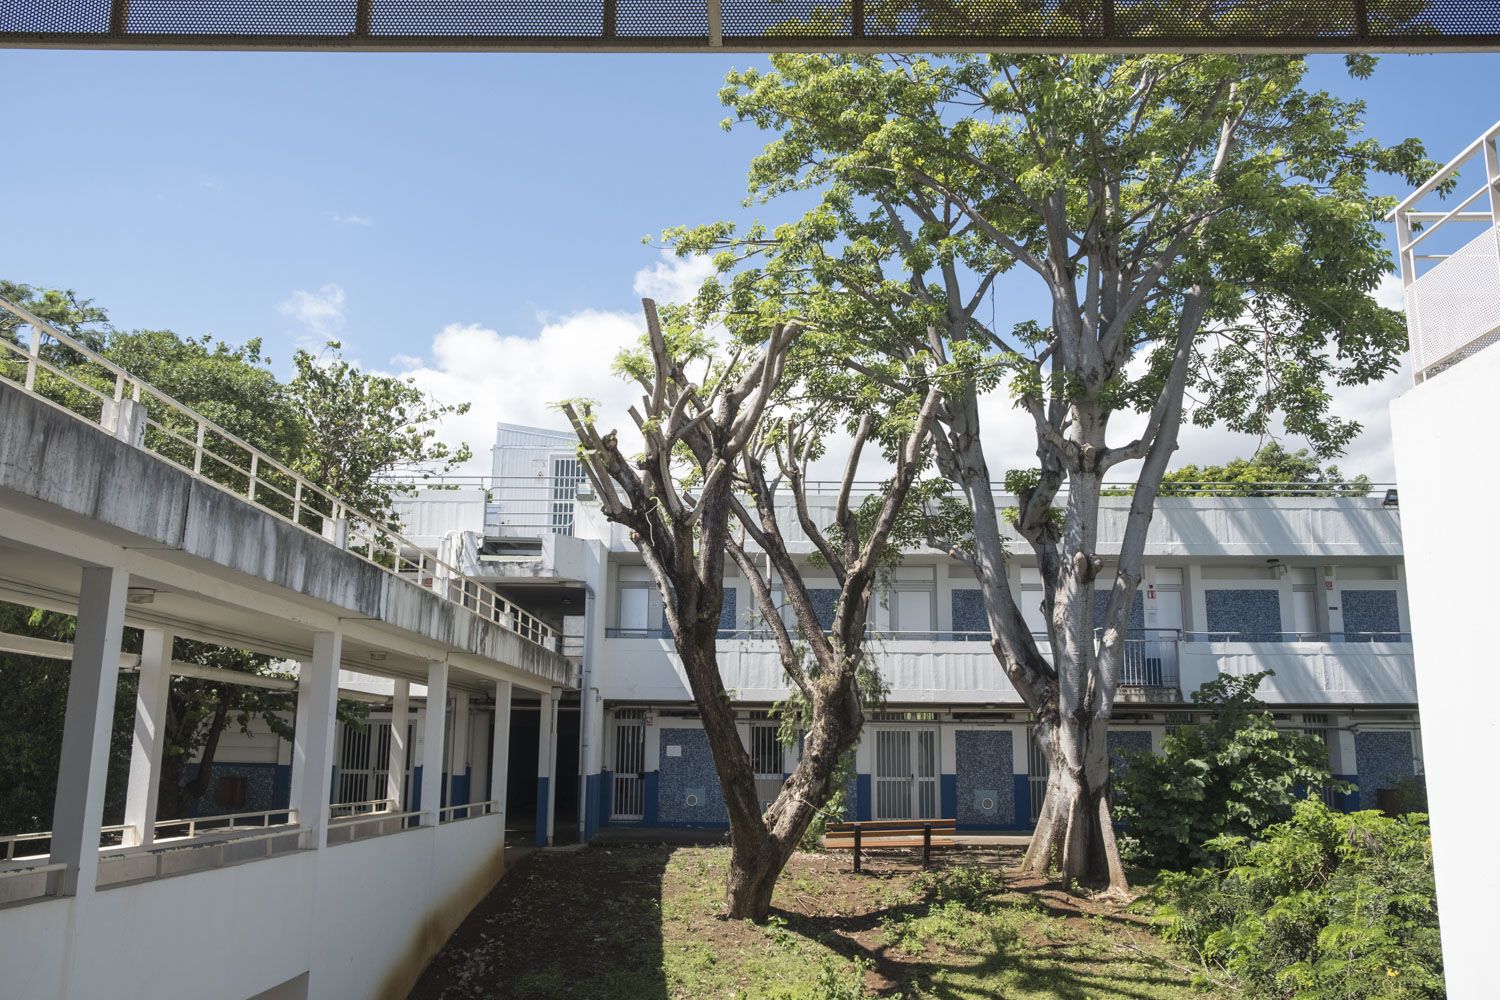 Les salles de classe de l’UFR Sciences et technologies de l’Université de la Réunion. Cette Unité de Formation et de Recherche dispose de 7 départements de formation (mathématiques, informatique, physique et sciences pour l’ingénieur, chimie, sciences du vivant, géosciences) et de 8 laboratoires. 